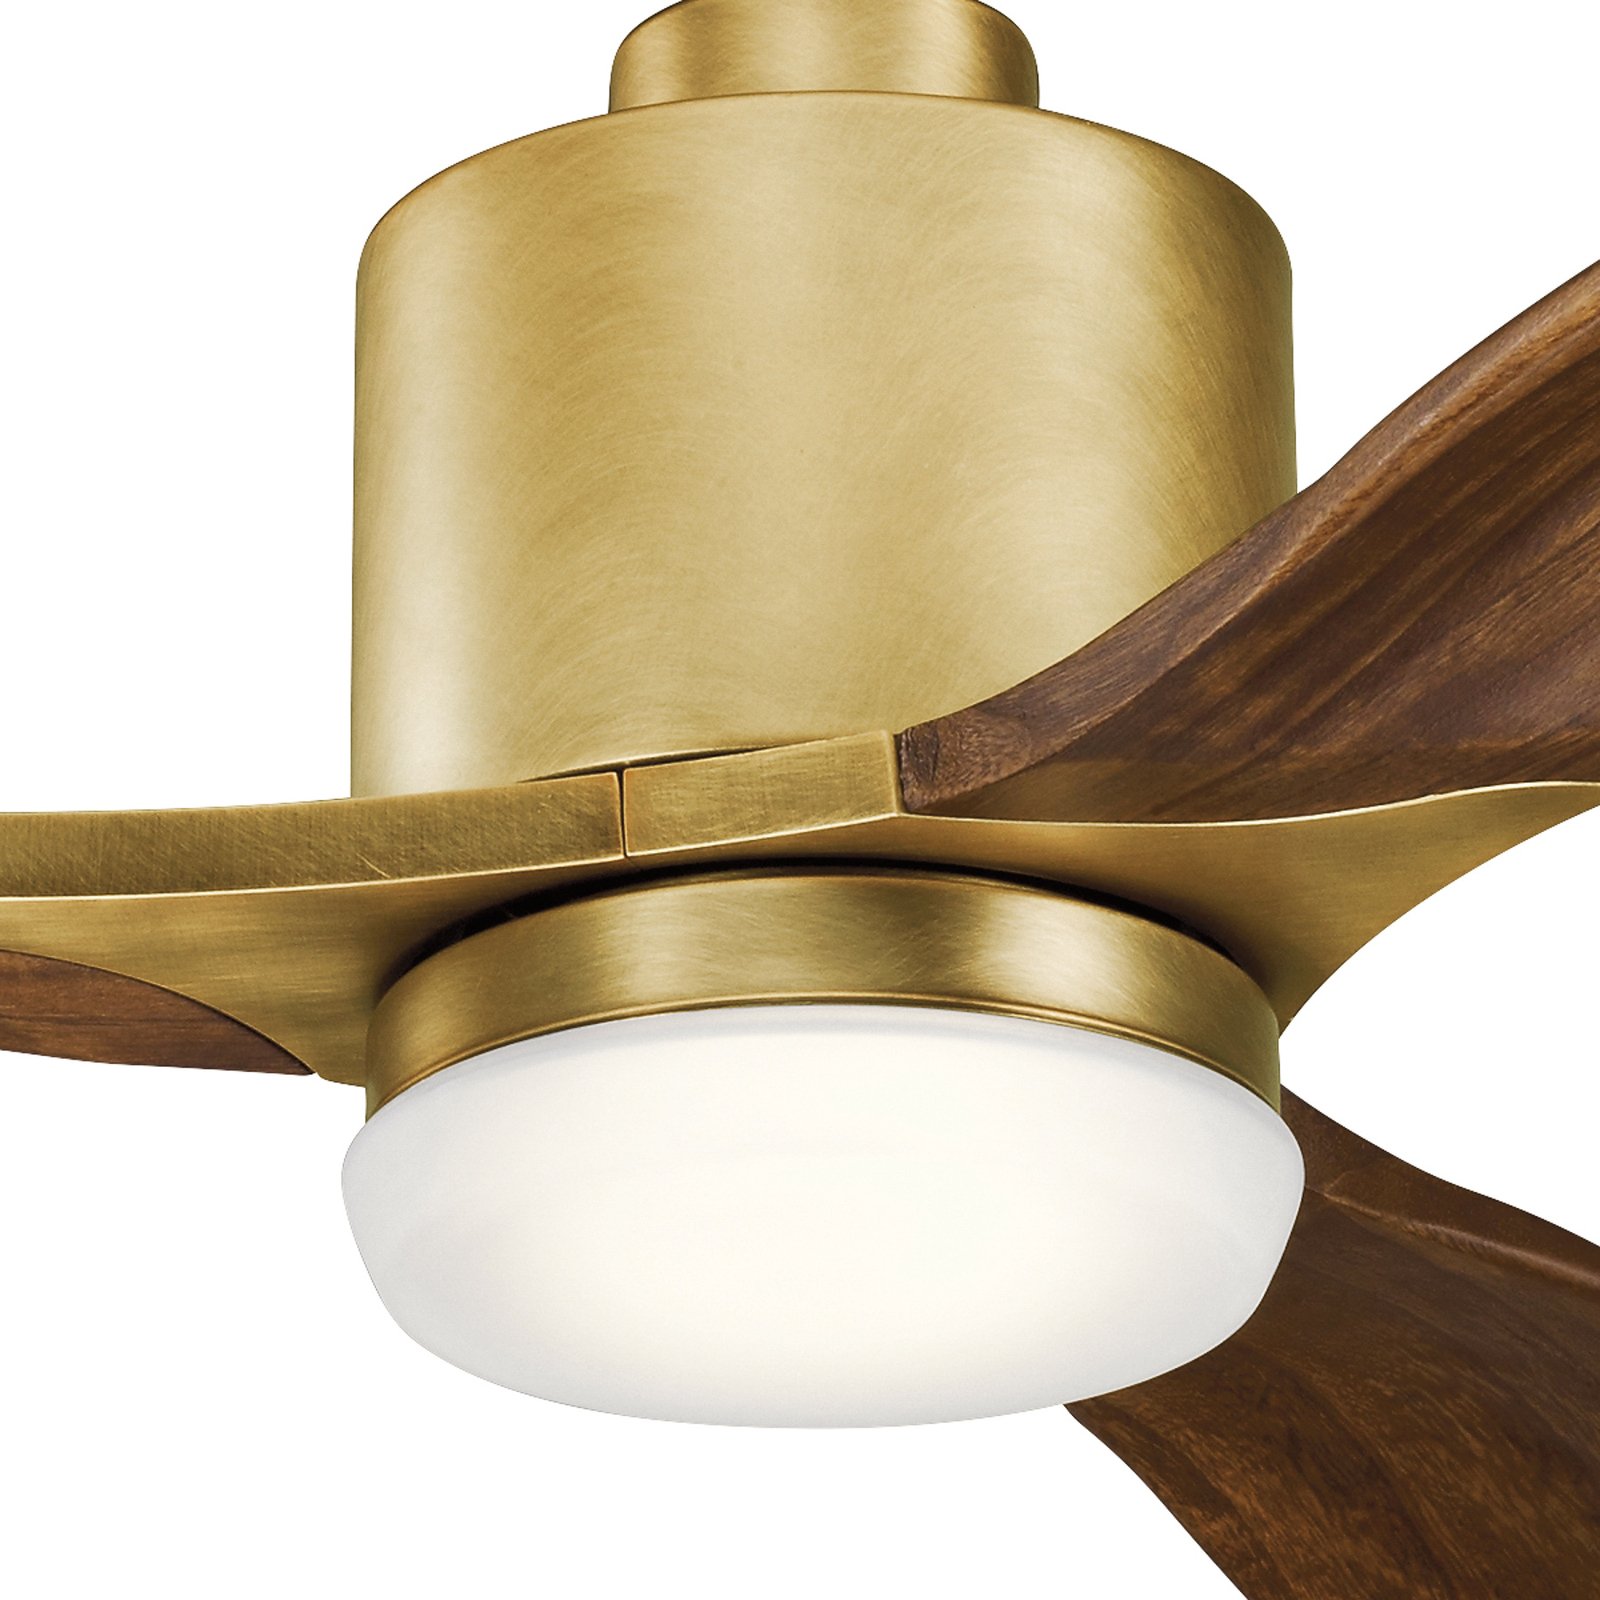 Ridley II LED ceiling fan, three-blade